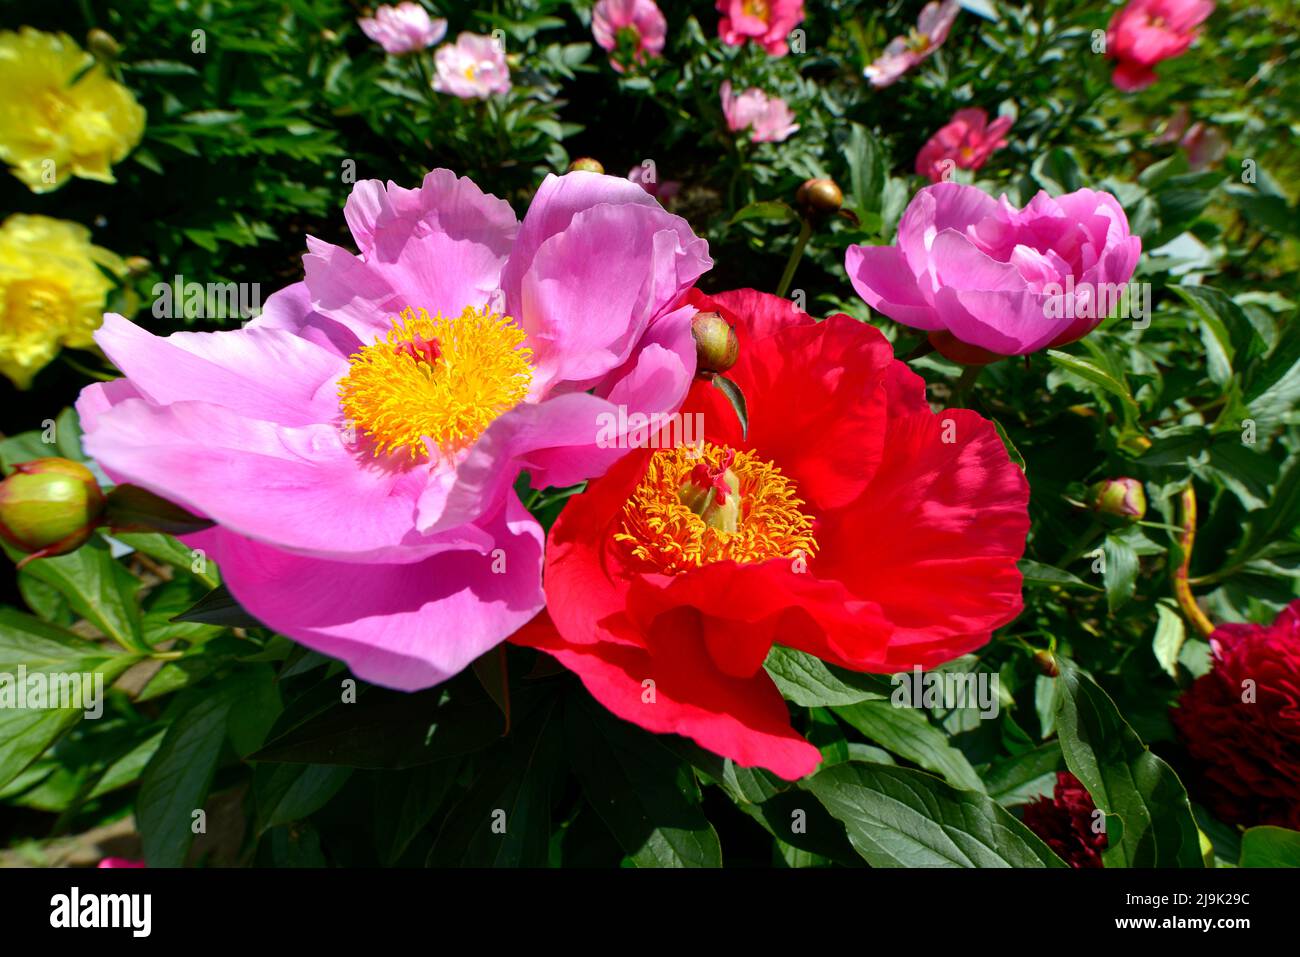 Flores de color rosa o rojo de peonías chinas (Paeonia lactiflora) con estambres amarillos y una abeja volando por encima de los pétalos rosas Foto de stock